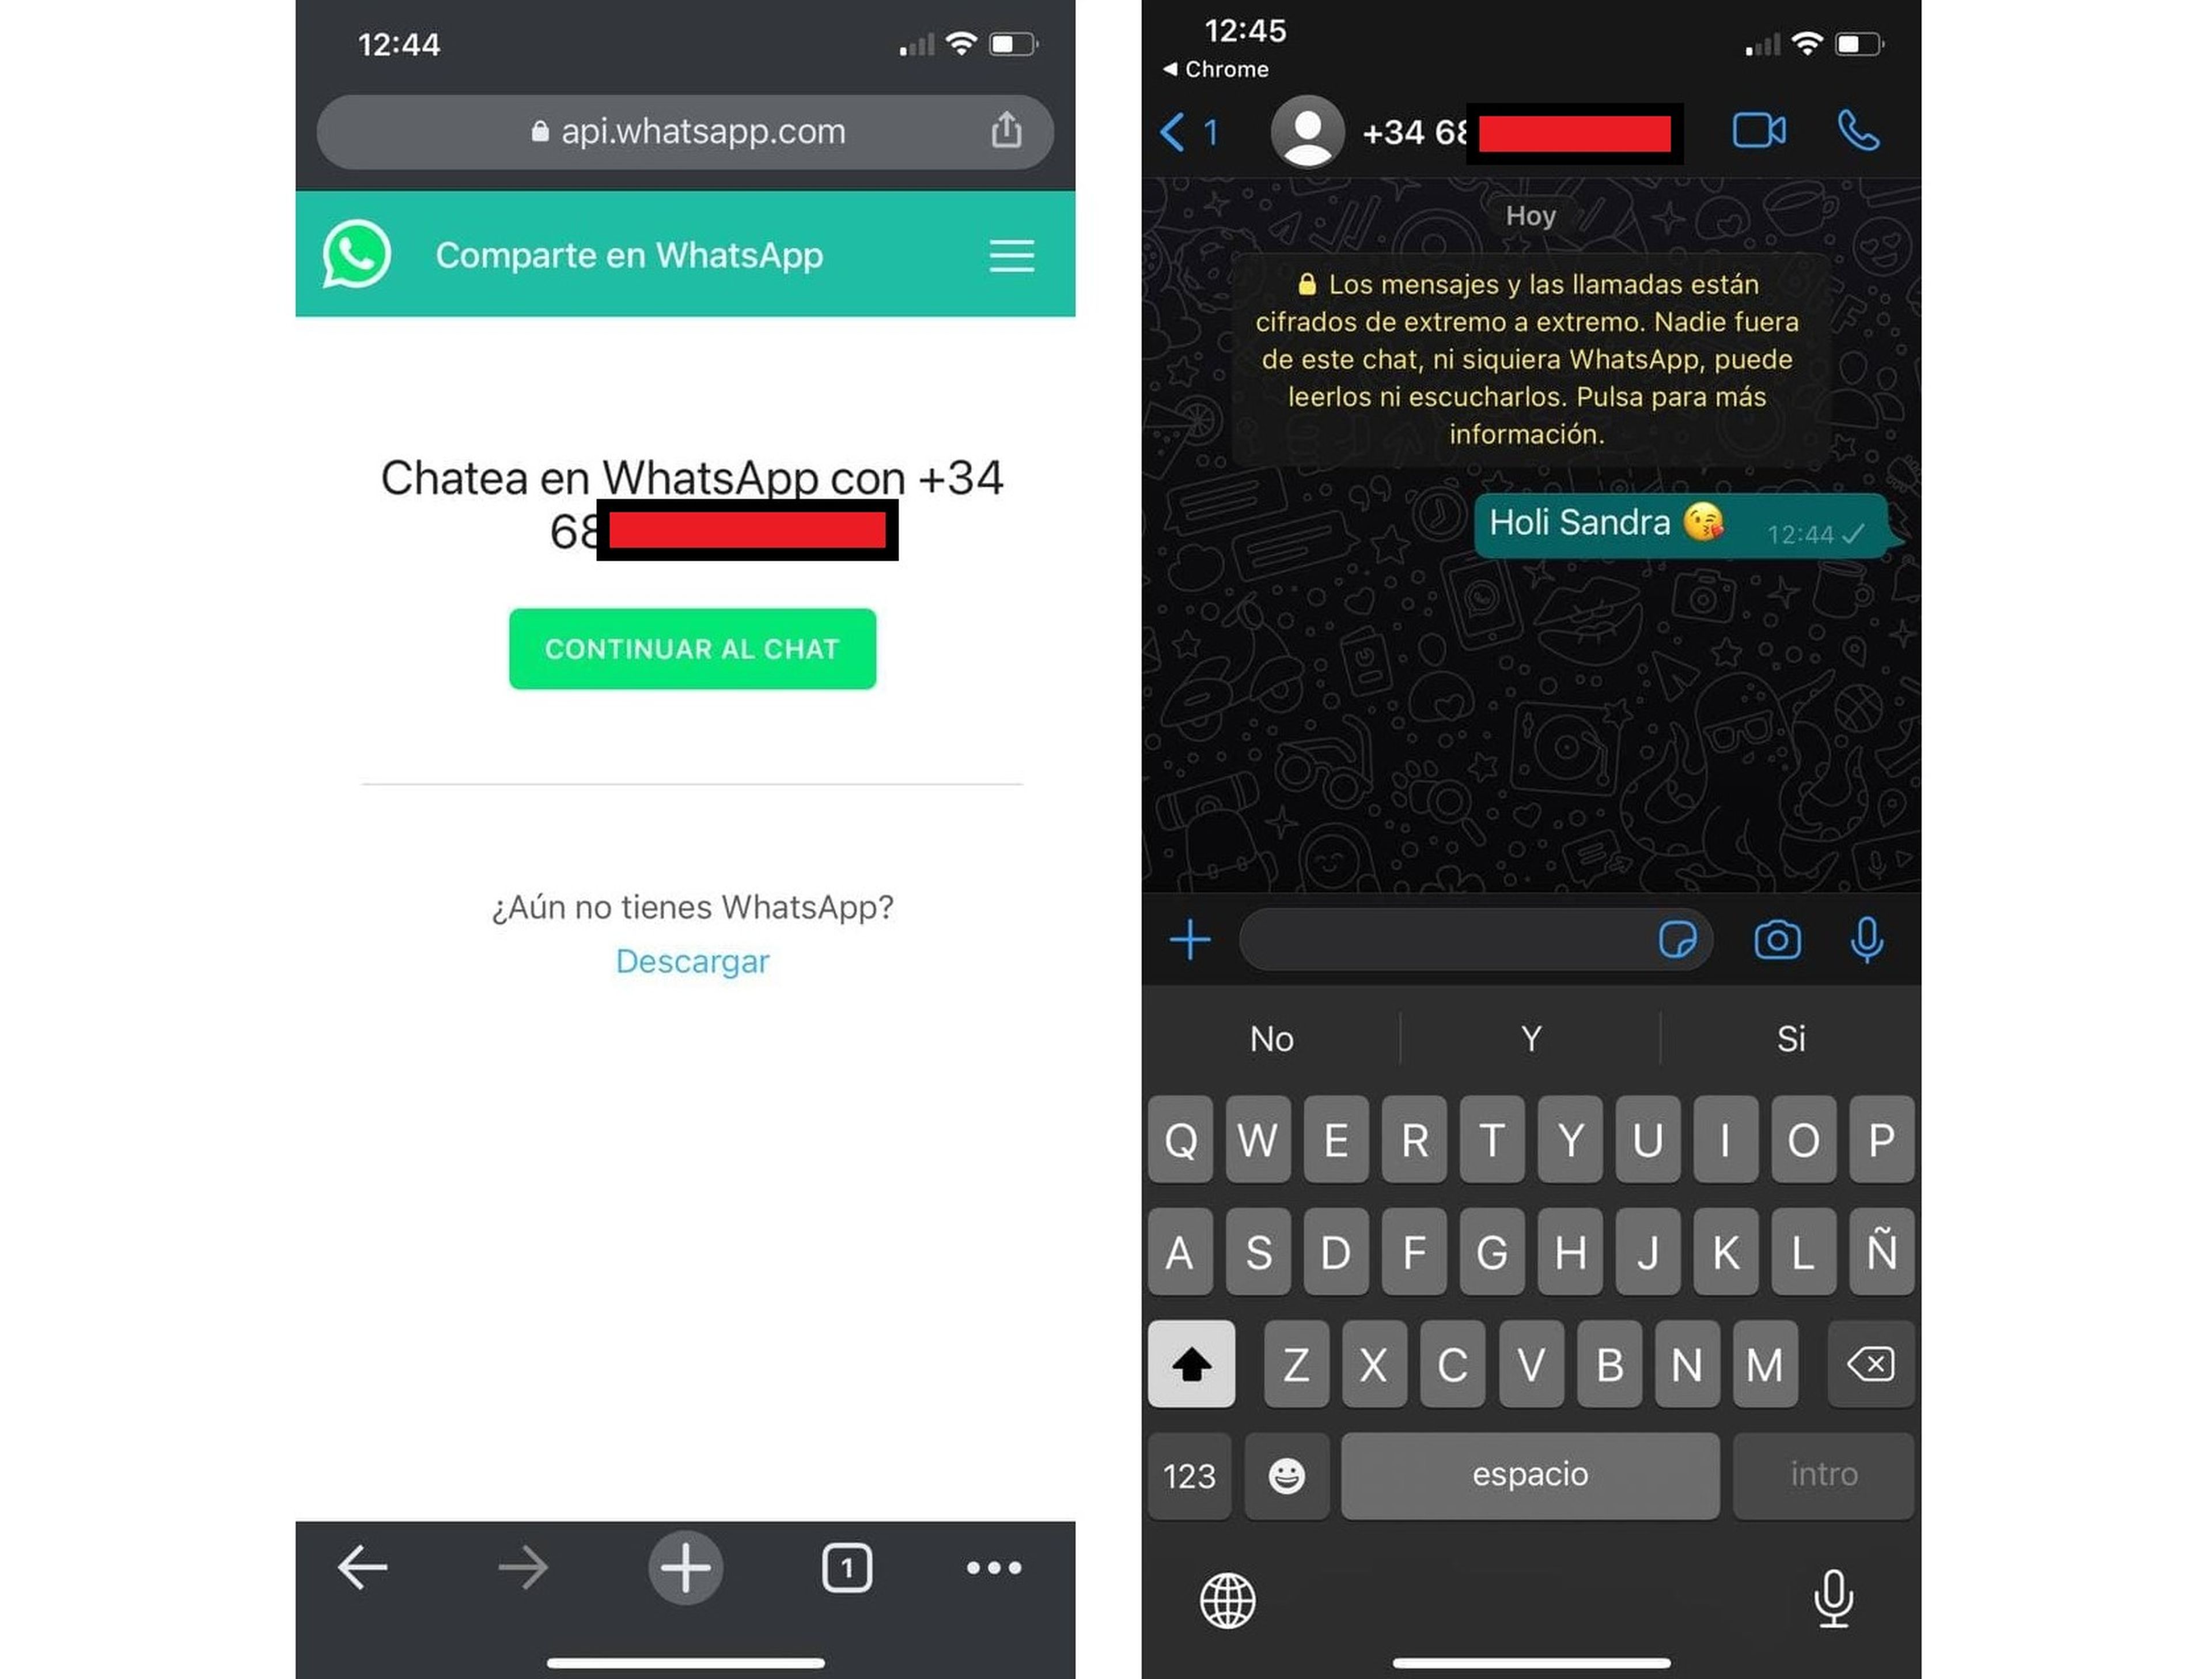 Cómo enviar un mensaje de WhatsApp sin agregar el contacto a la agenda